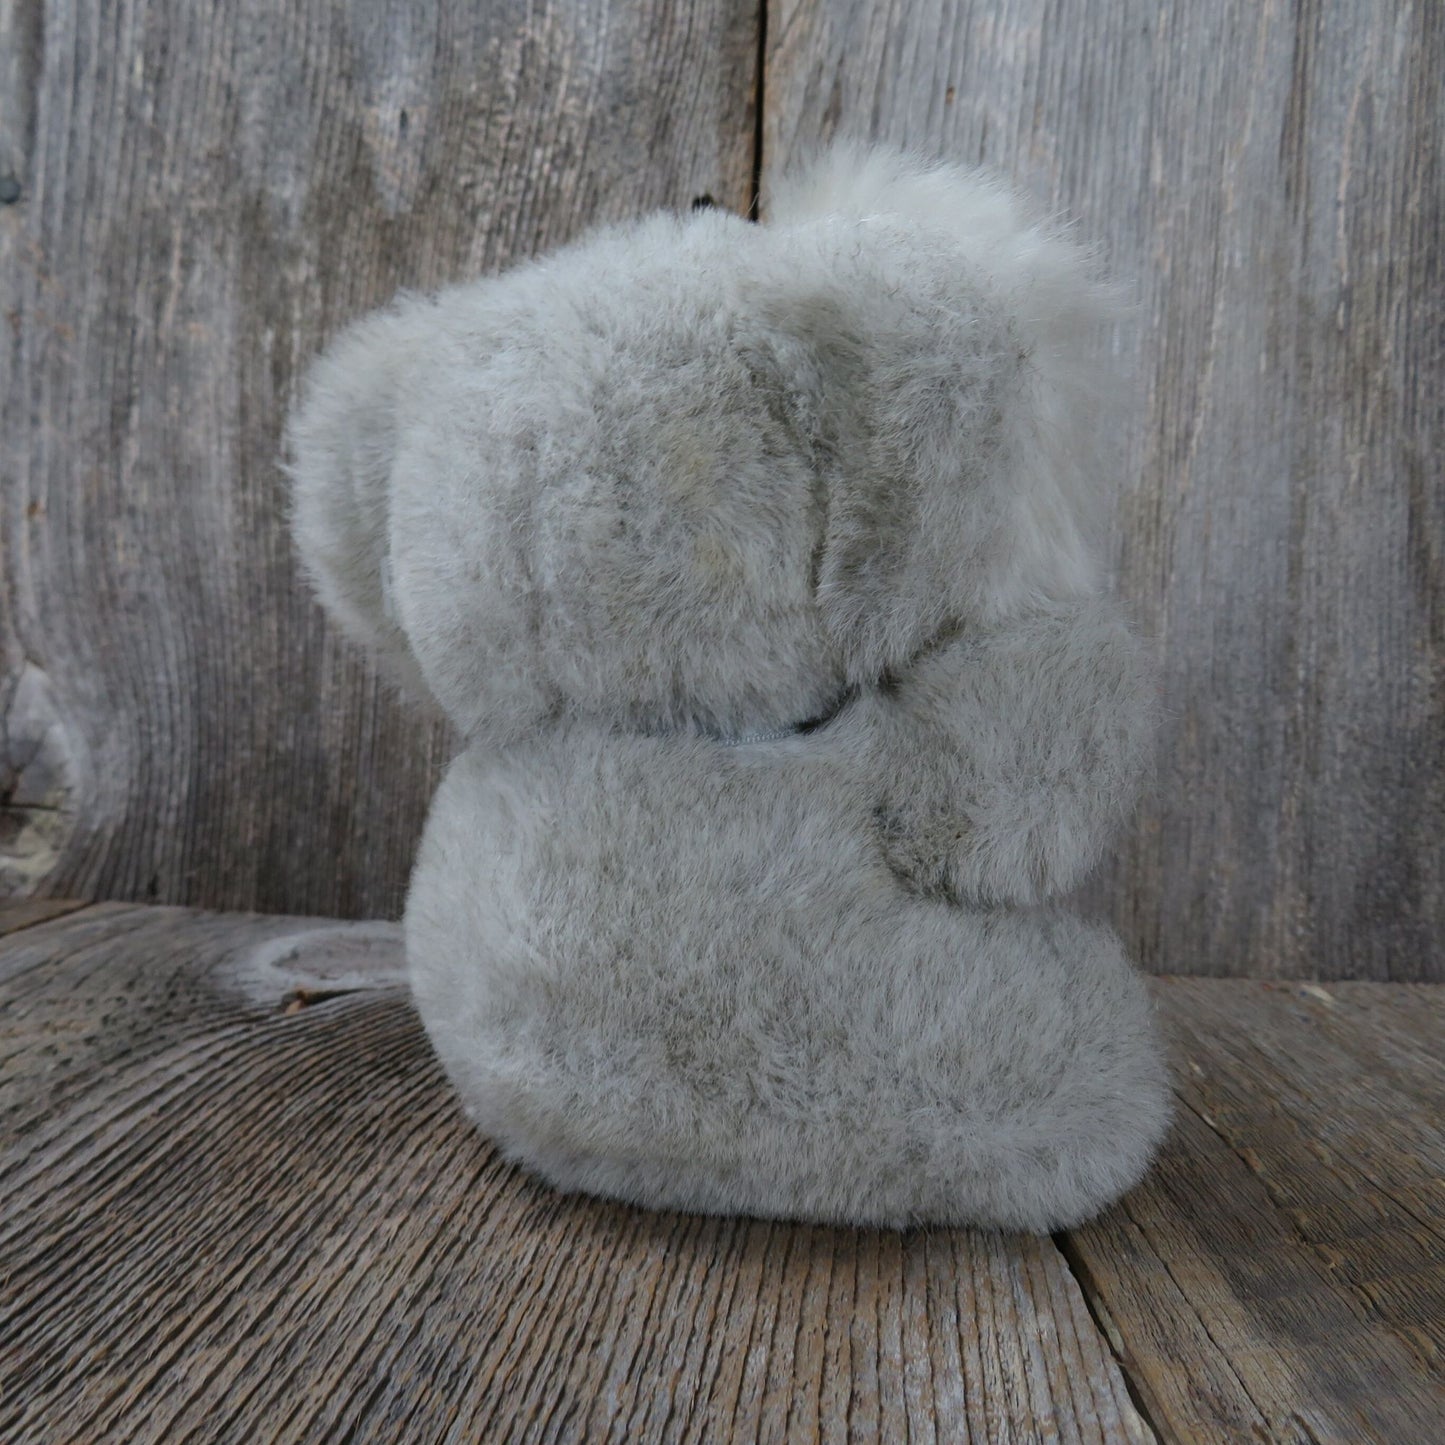 Vintage Koala Baby Plush Stuffed America Wego Animal Stuffed Animal Korea